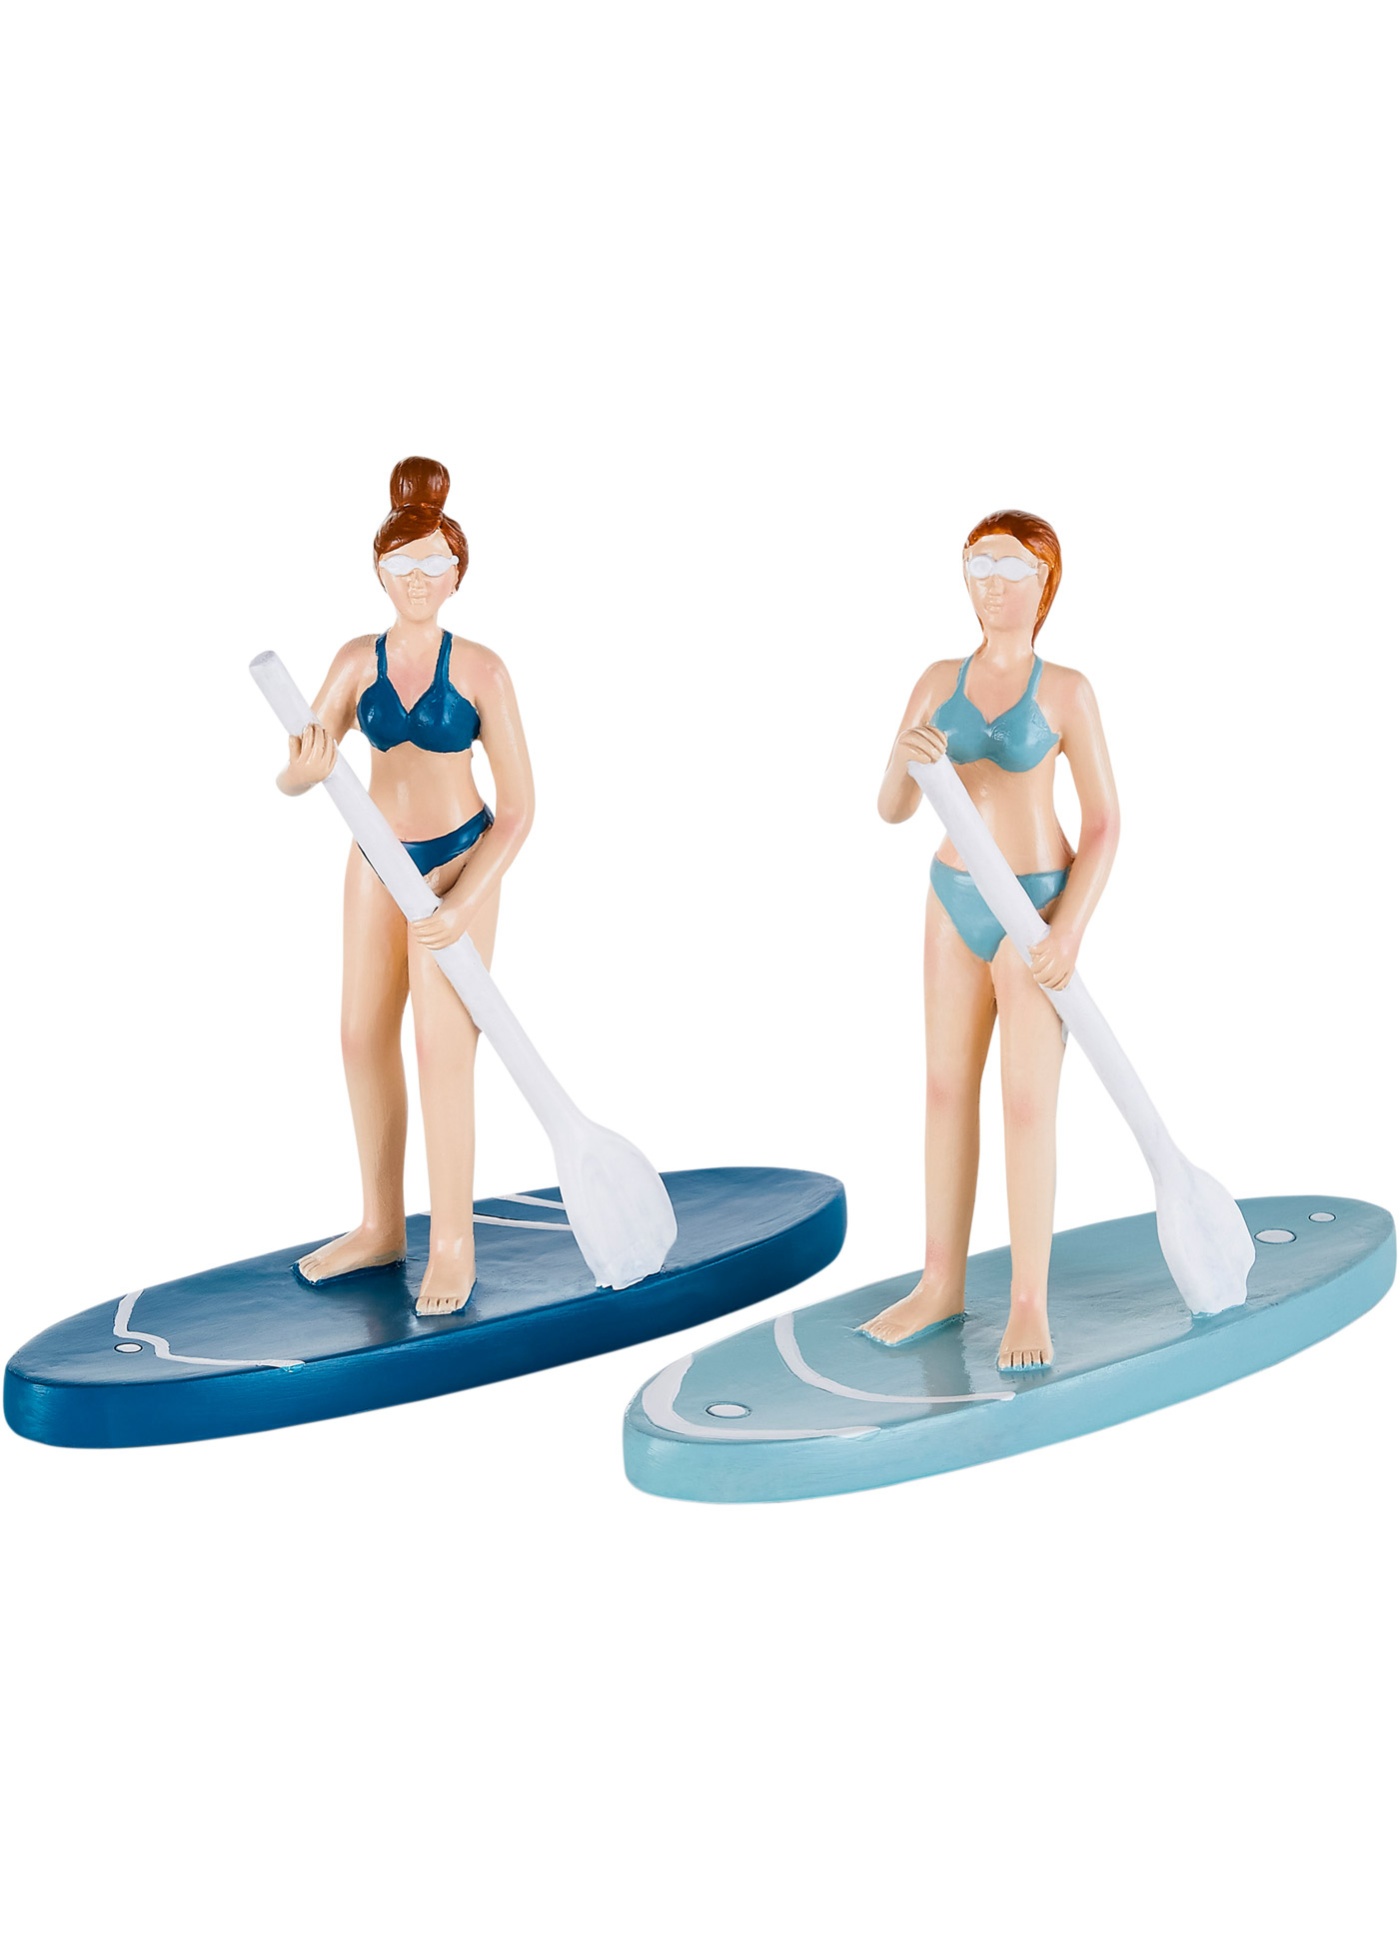 Lot de 2 figurines avec planche de stand up paddle